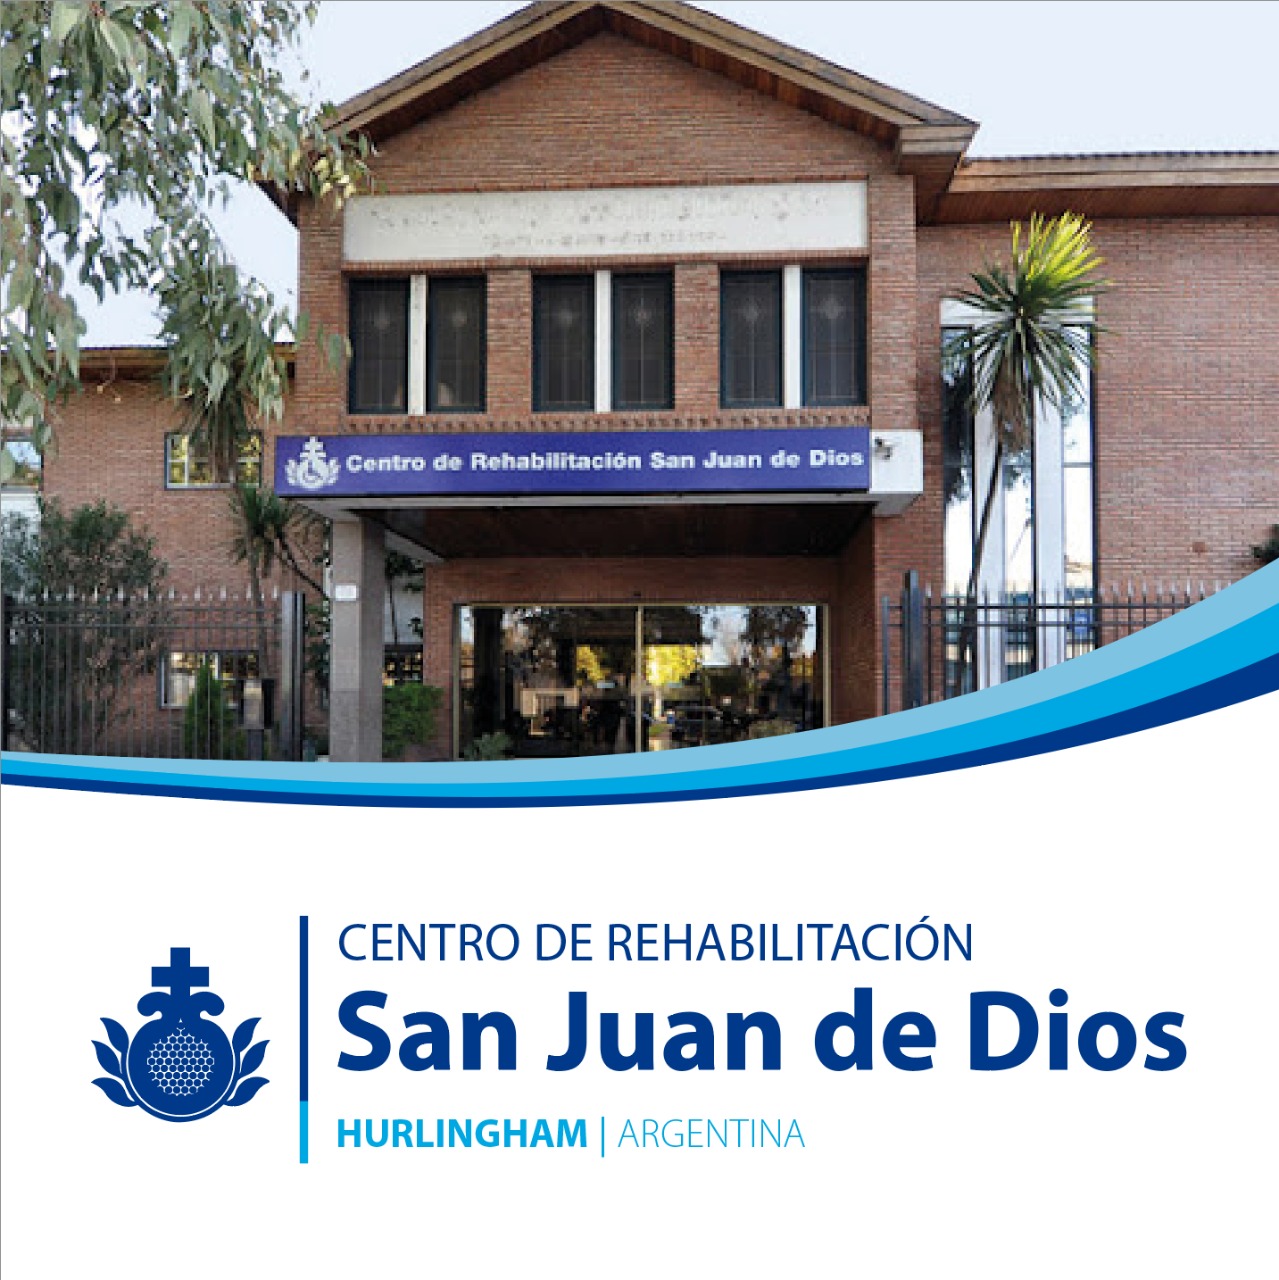 Centro Argentina Centro de Rehabilitacion San Juan de Dios | Orden Hospitalaria San Juan de Dios